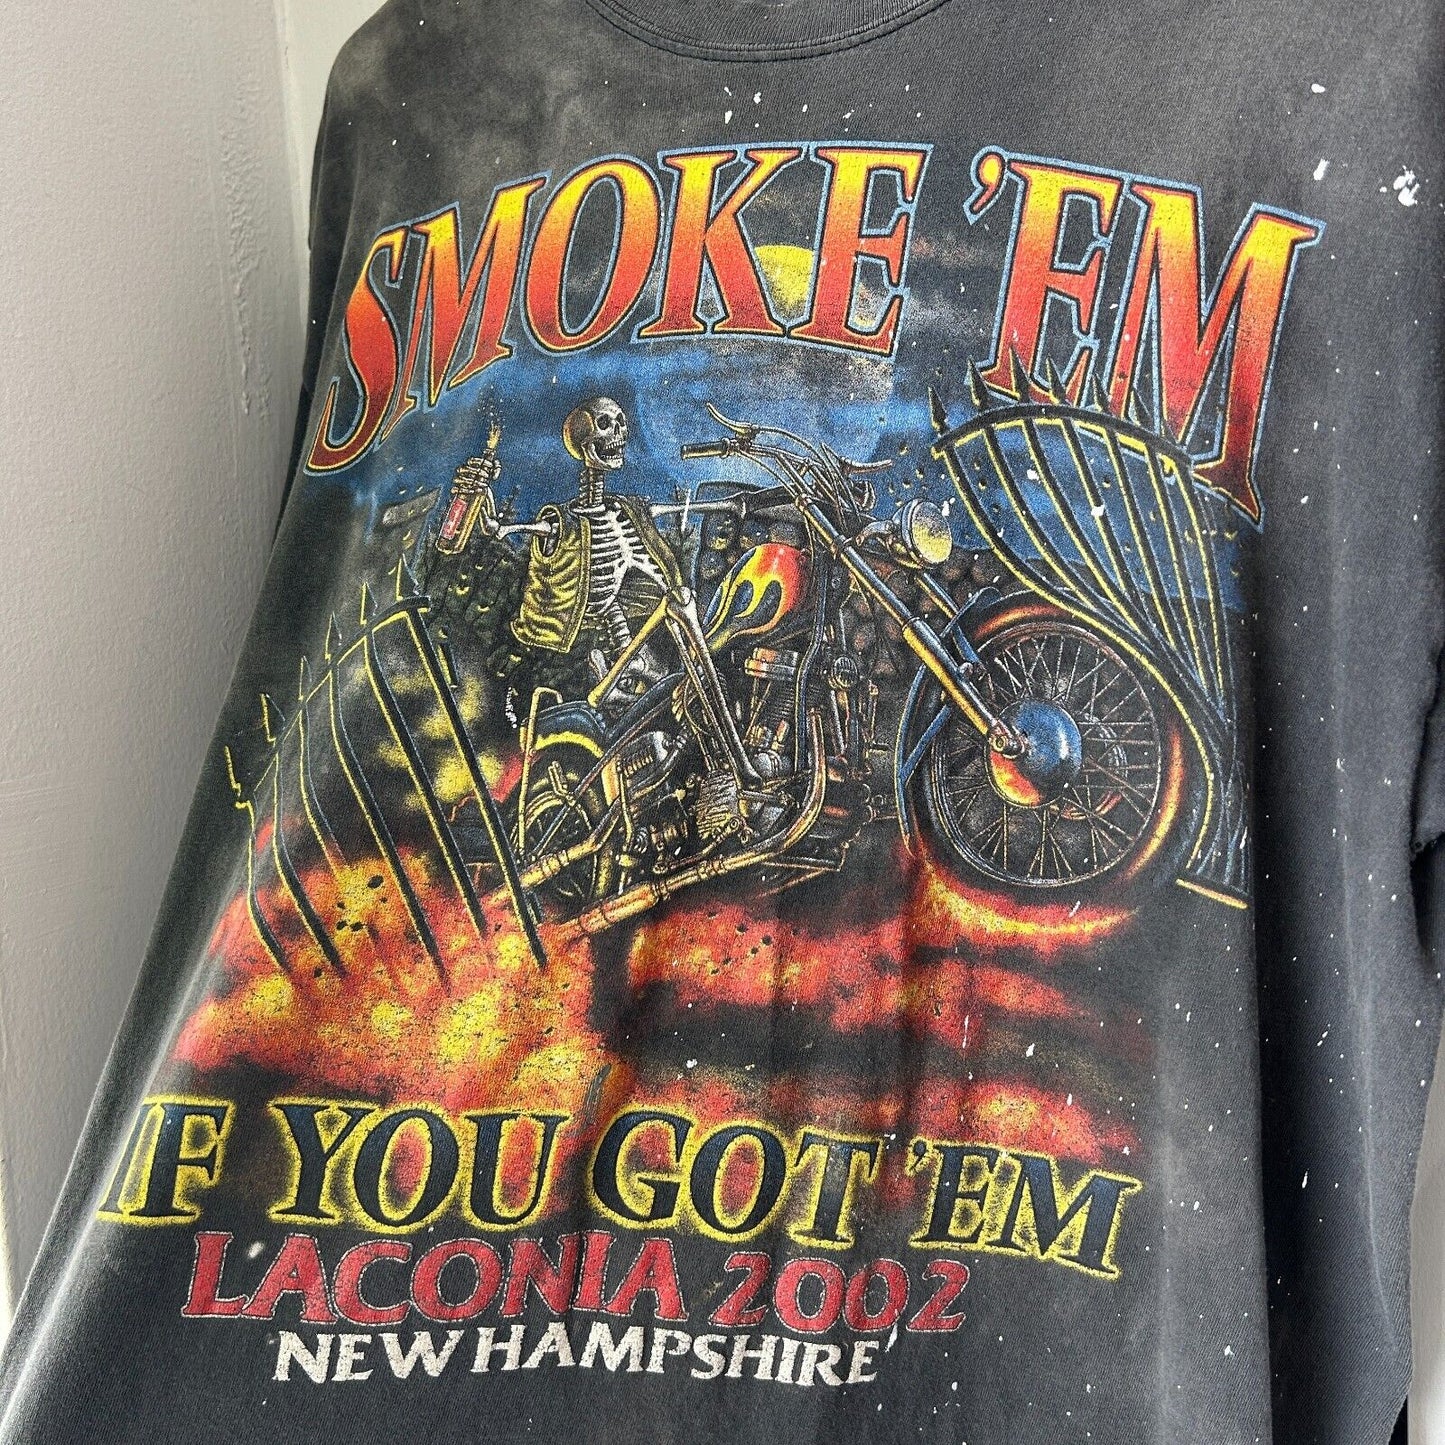 VINTAGE | Smoke Em' If You Got 'Em Faded Thrashed Biker T-Shirt sz L Adult